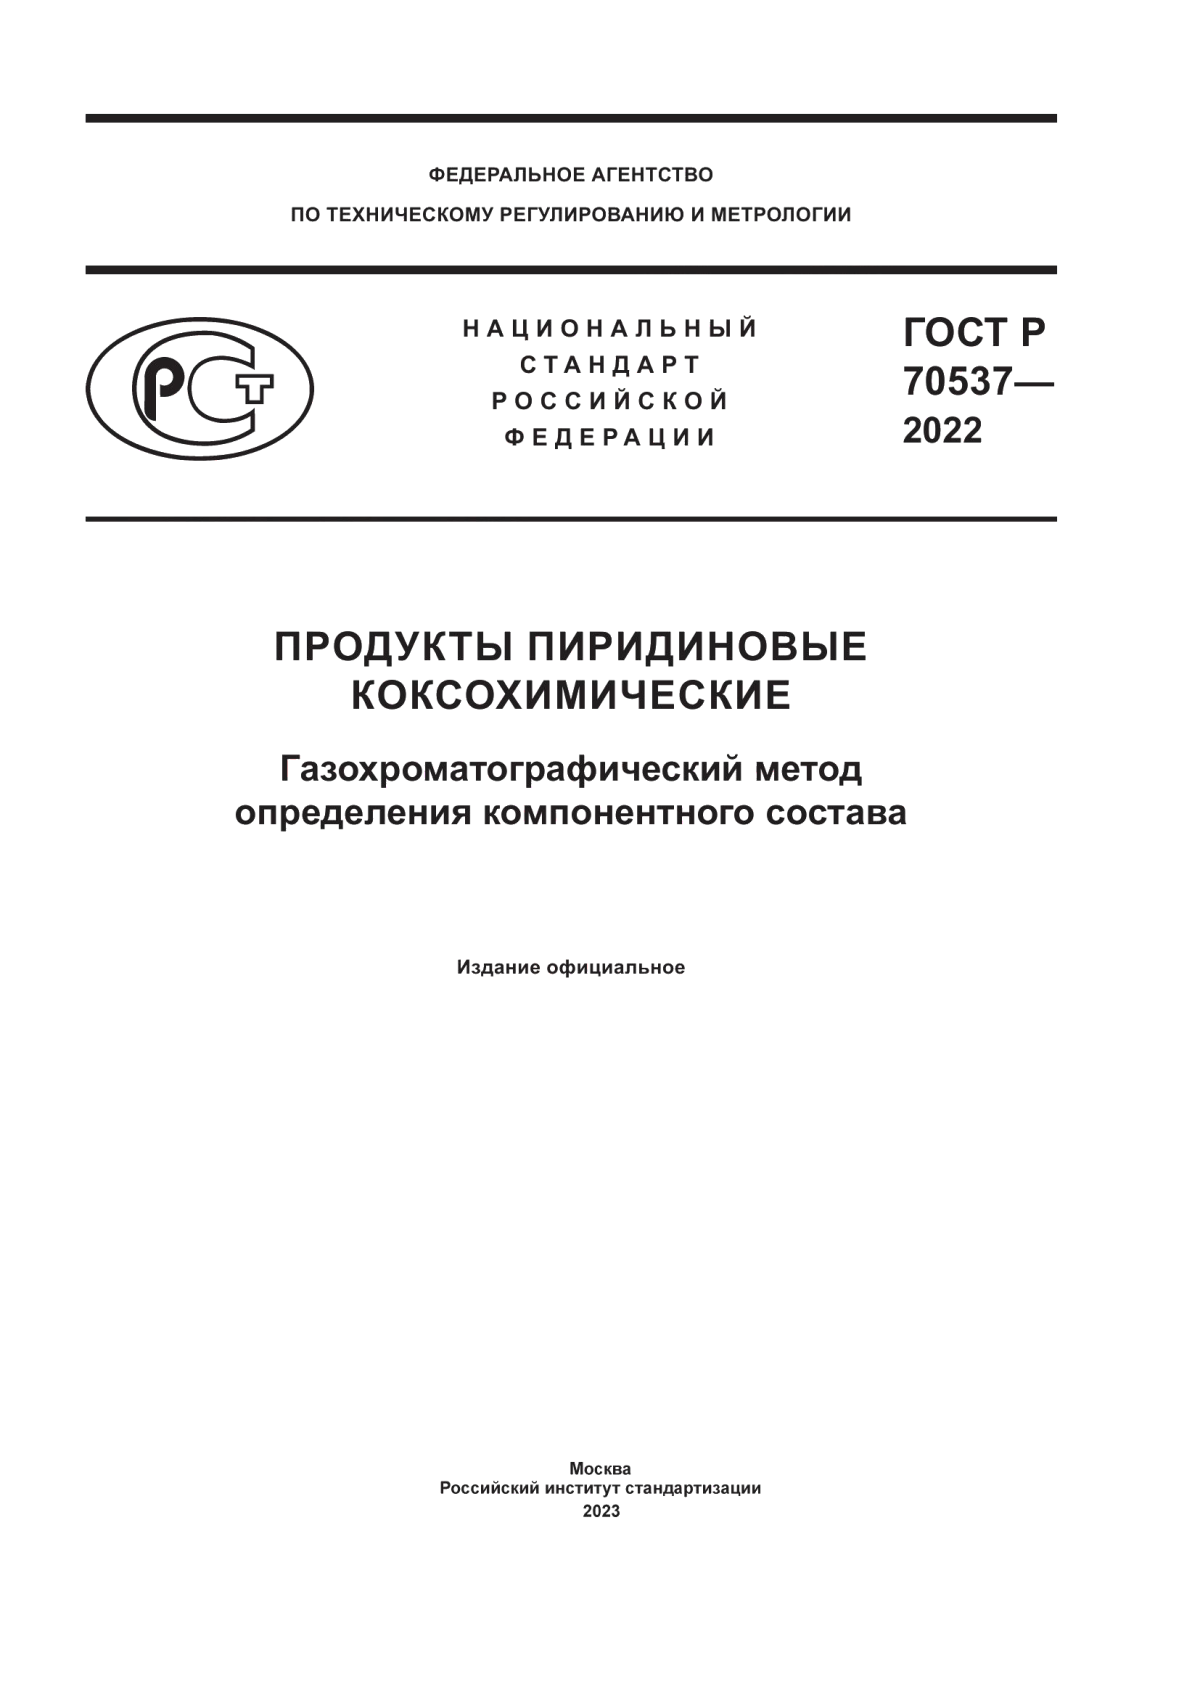 ГОСТ Р 70537-2022 Продукты пиридиновые коксохимические. Газохроматографический метод определения компонентного состава